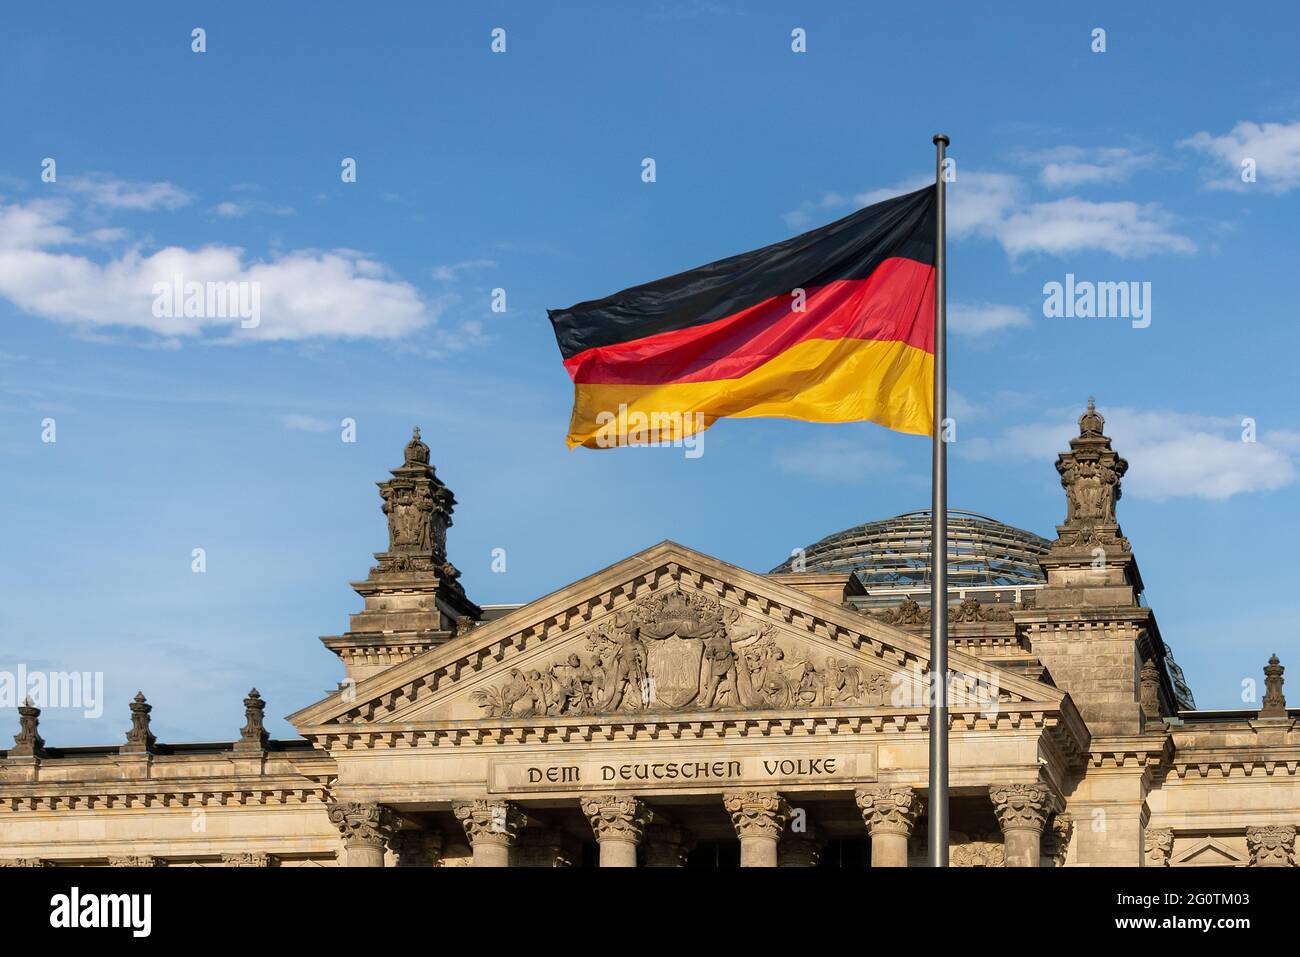 Deutsche Flagge vor dem Deutschen Bundestag - Reichstagsgebäude - Berlin, Deutschland - Text sagt: Dem deutschen Volk Stockfoto